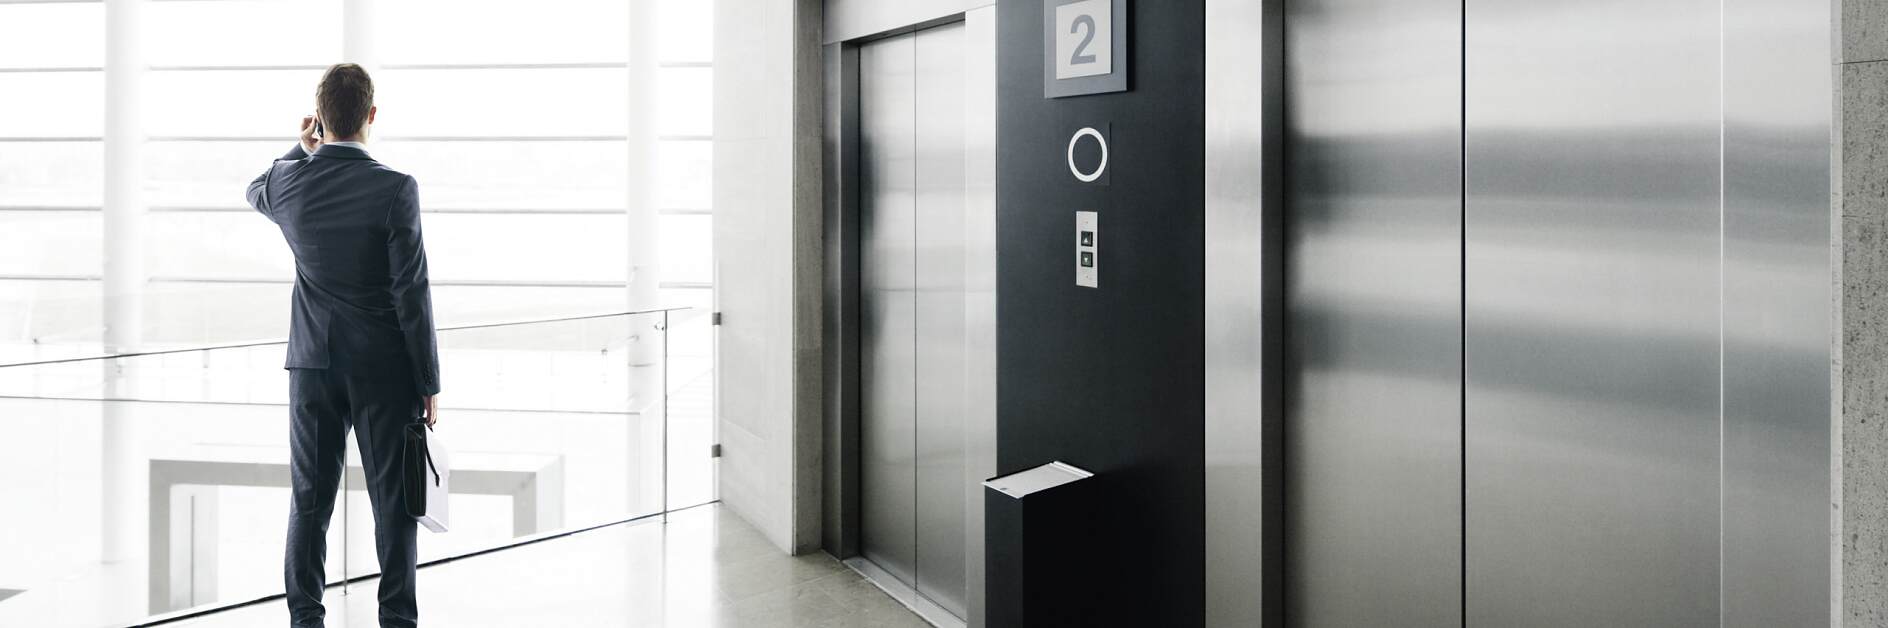 Soluciones tesa para la industria de los ascensores